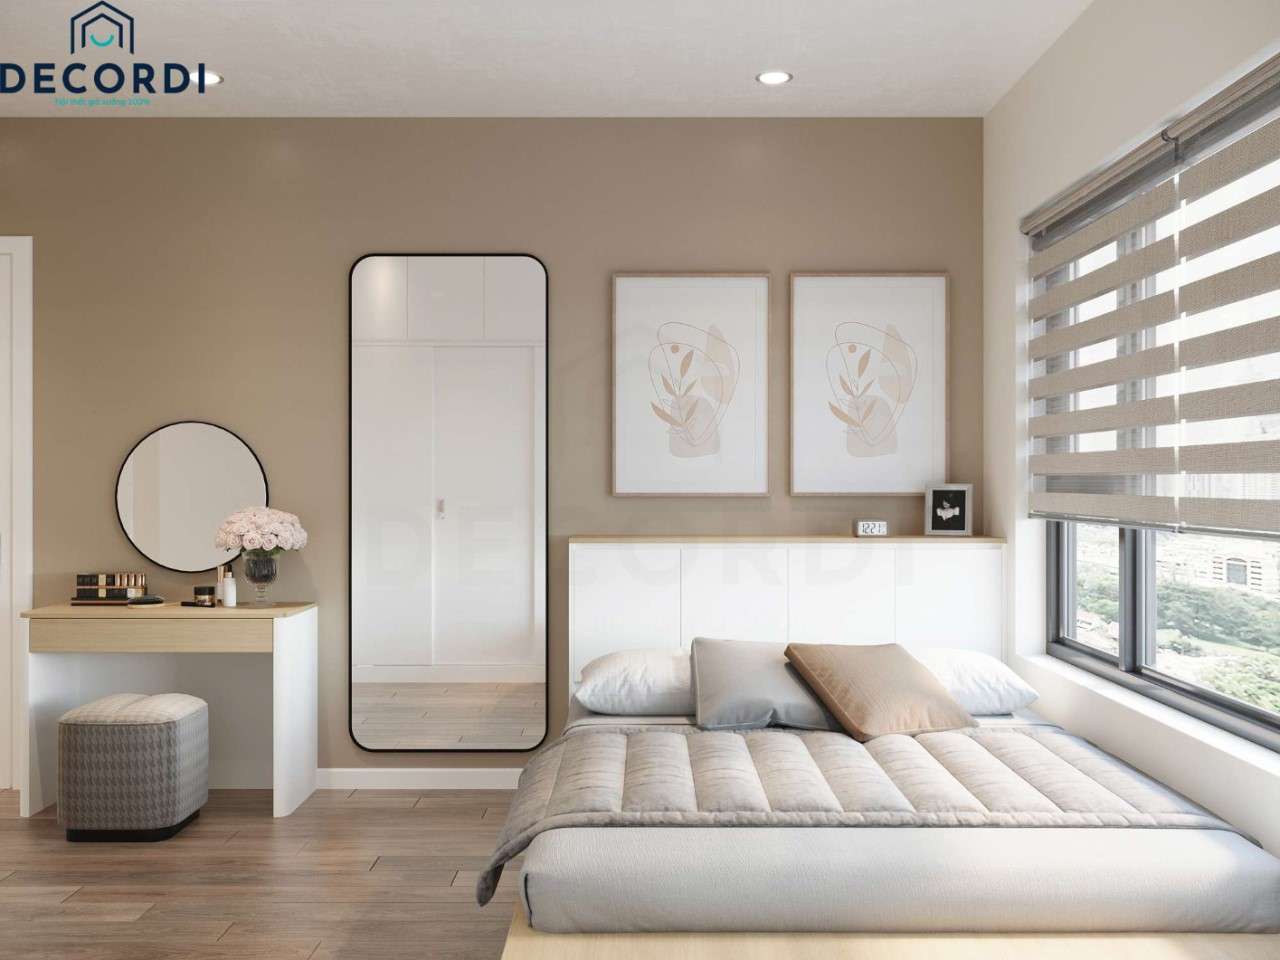 Phòng ngủ nhỏ được thiết kế tối giản công năng và kiểu dáng kết hợp sử dụng gương tạo cảm giác không gian thêm thông thoáng hơn